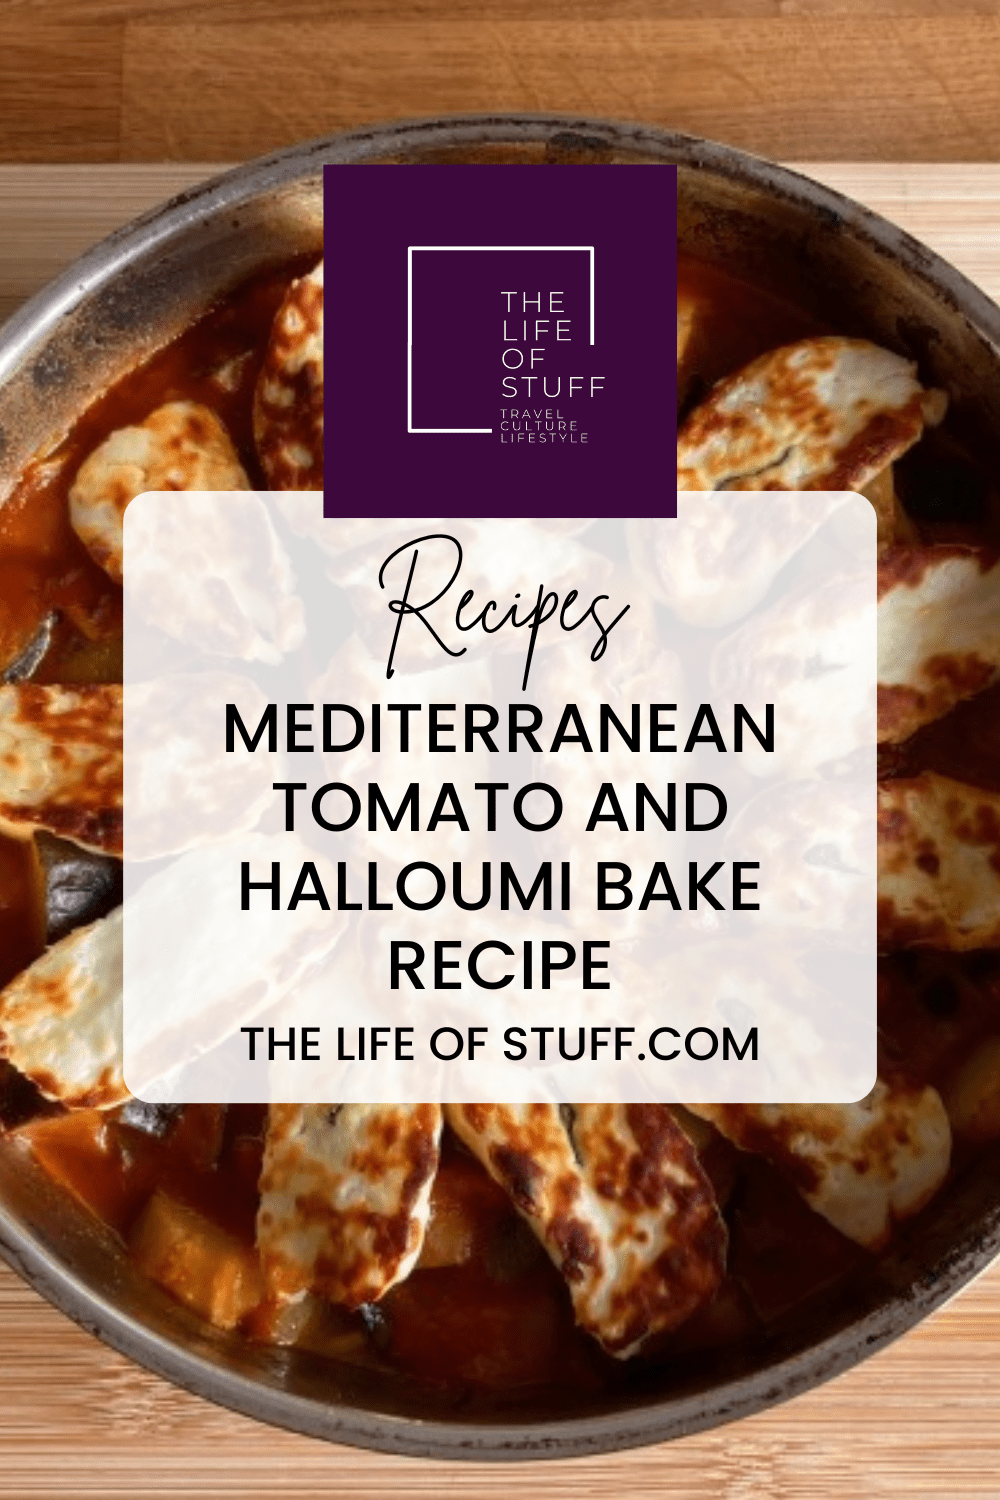 Delicious Mediterranean Tomato and Halloumi Bake Recipe - The Life of Stuff